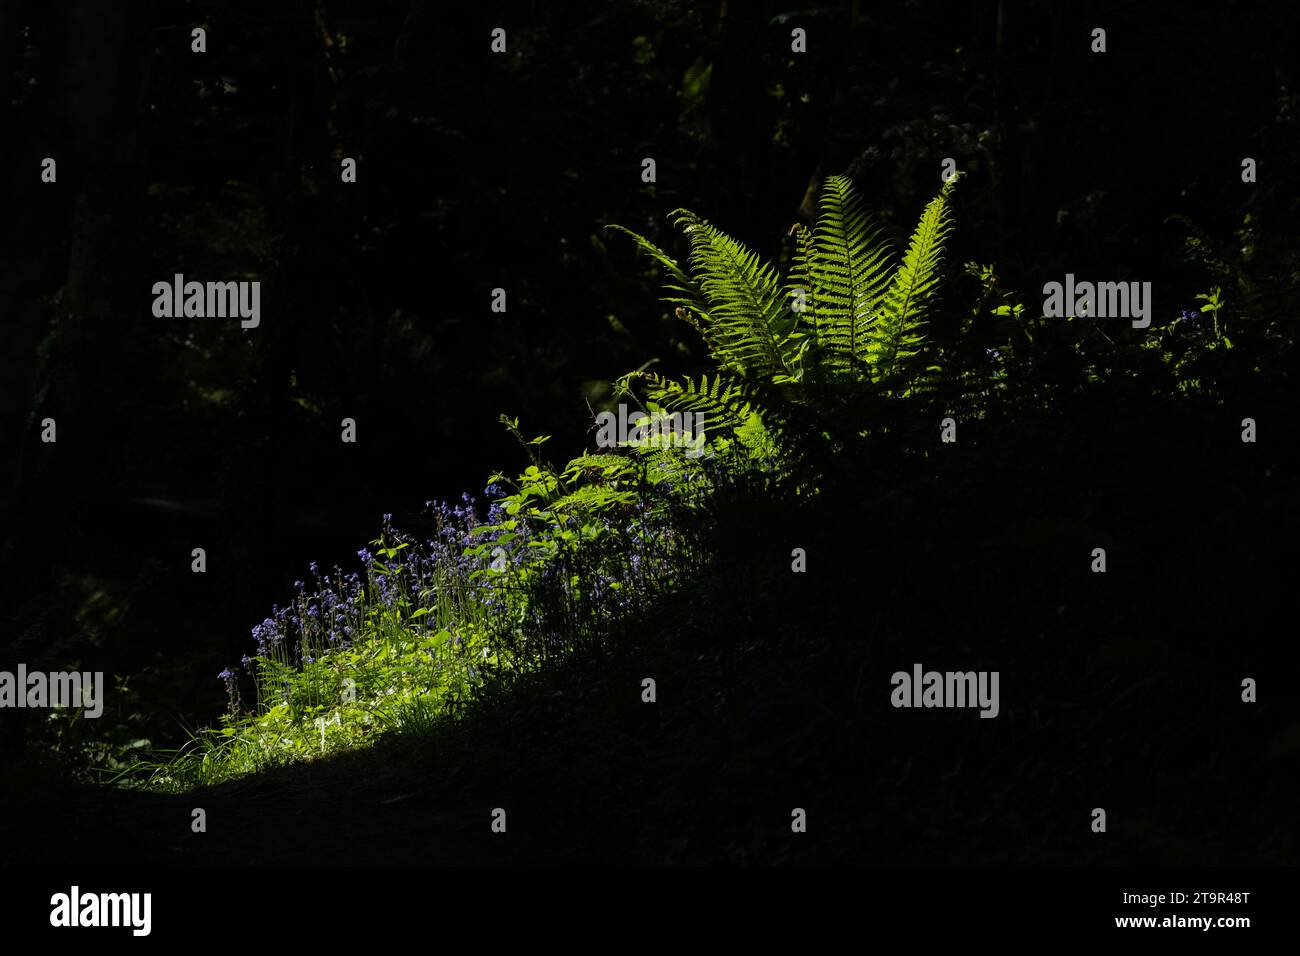 Blauglocken Farne und Waldpflanzen, die von Sonnenschein beleuchtet werden, brechen durch eine Lücke in den Bäumen - Großbritannien Stockfoto